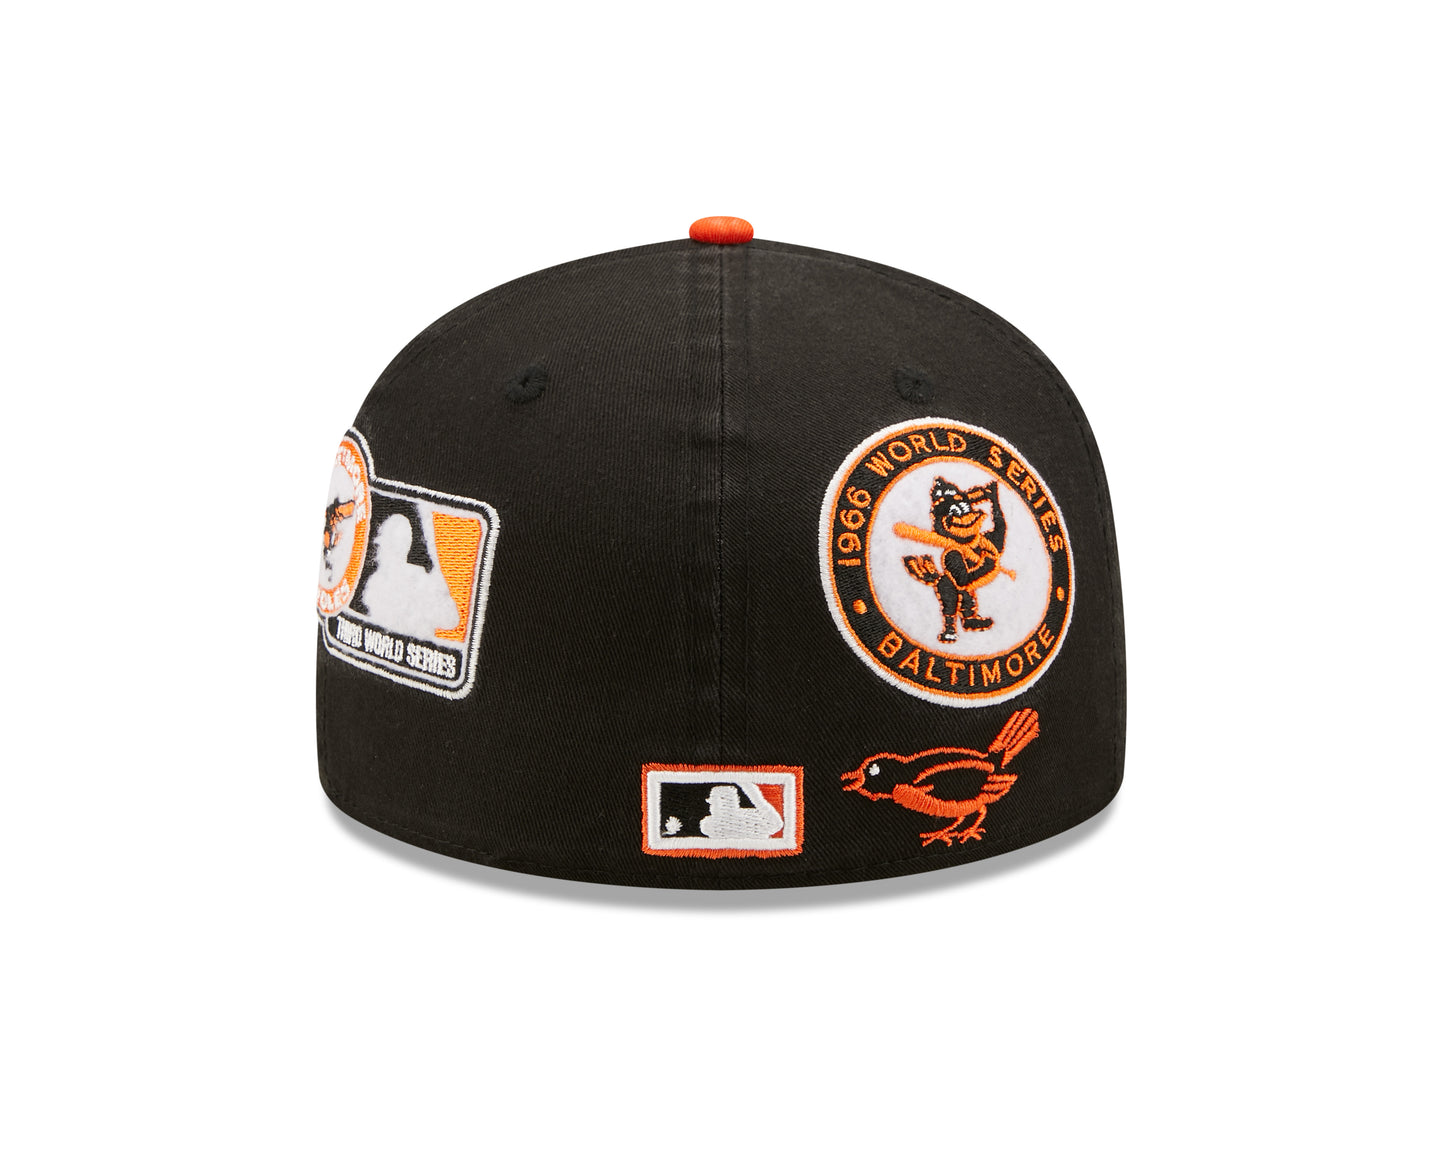 Baltimore Orioles Cooperstown Patch 59FIFTY Cap - Sort/Orange - Headz Up 